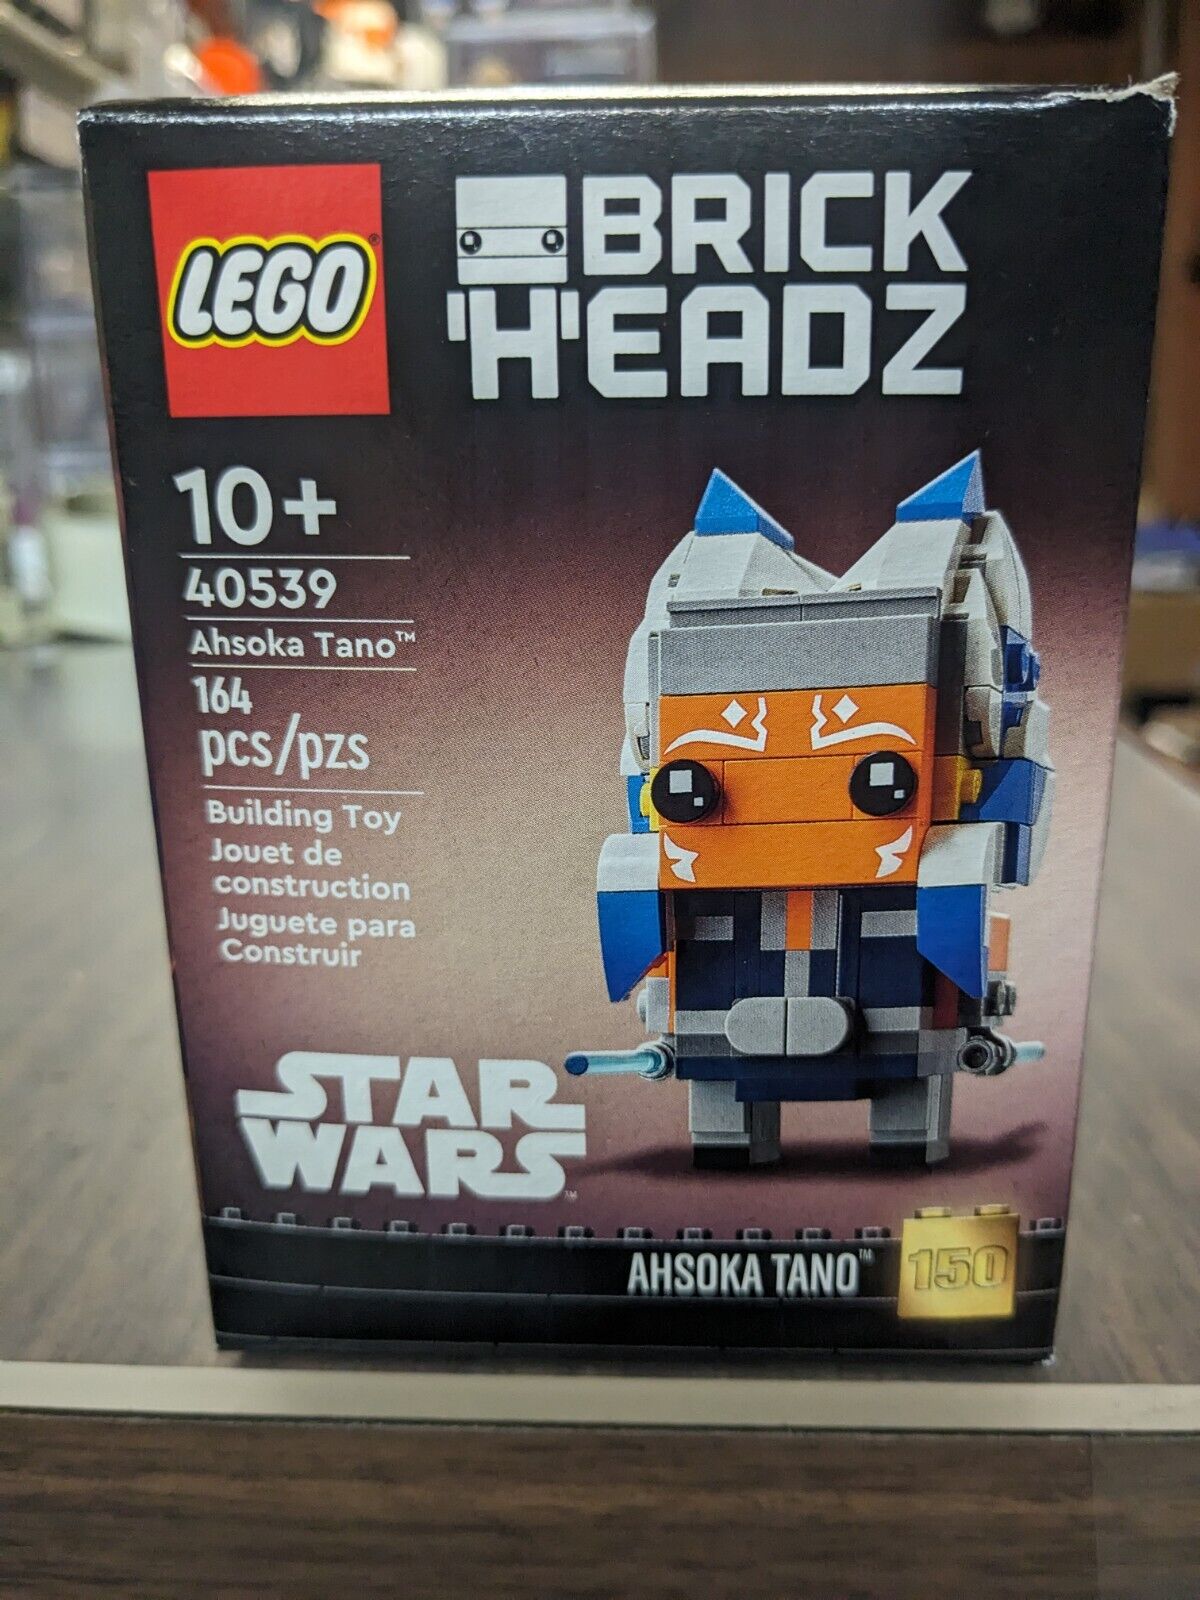 LEGO 40539 Brickheadz Star Wars Ahsoka Tano #150 164pcs New SHIP FAST FREE